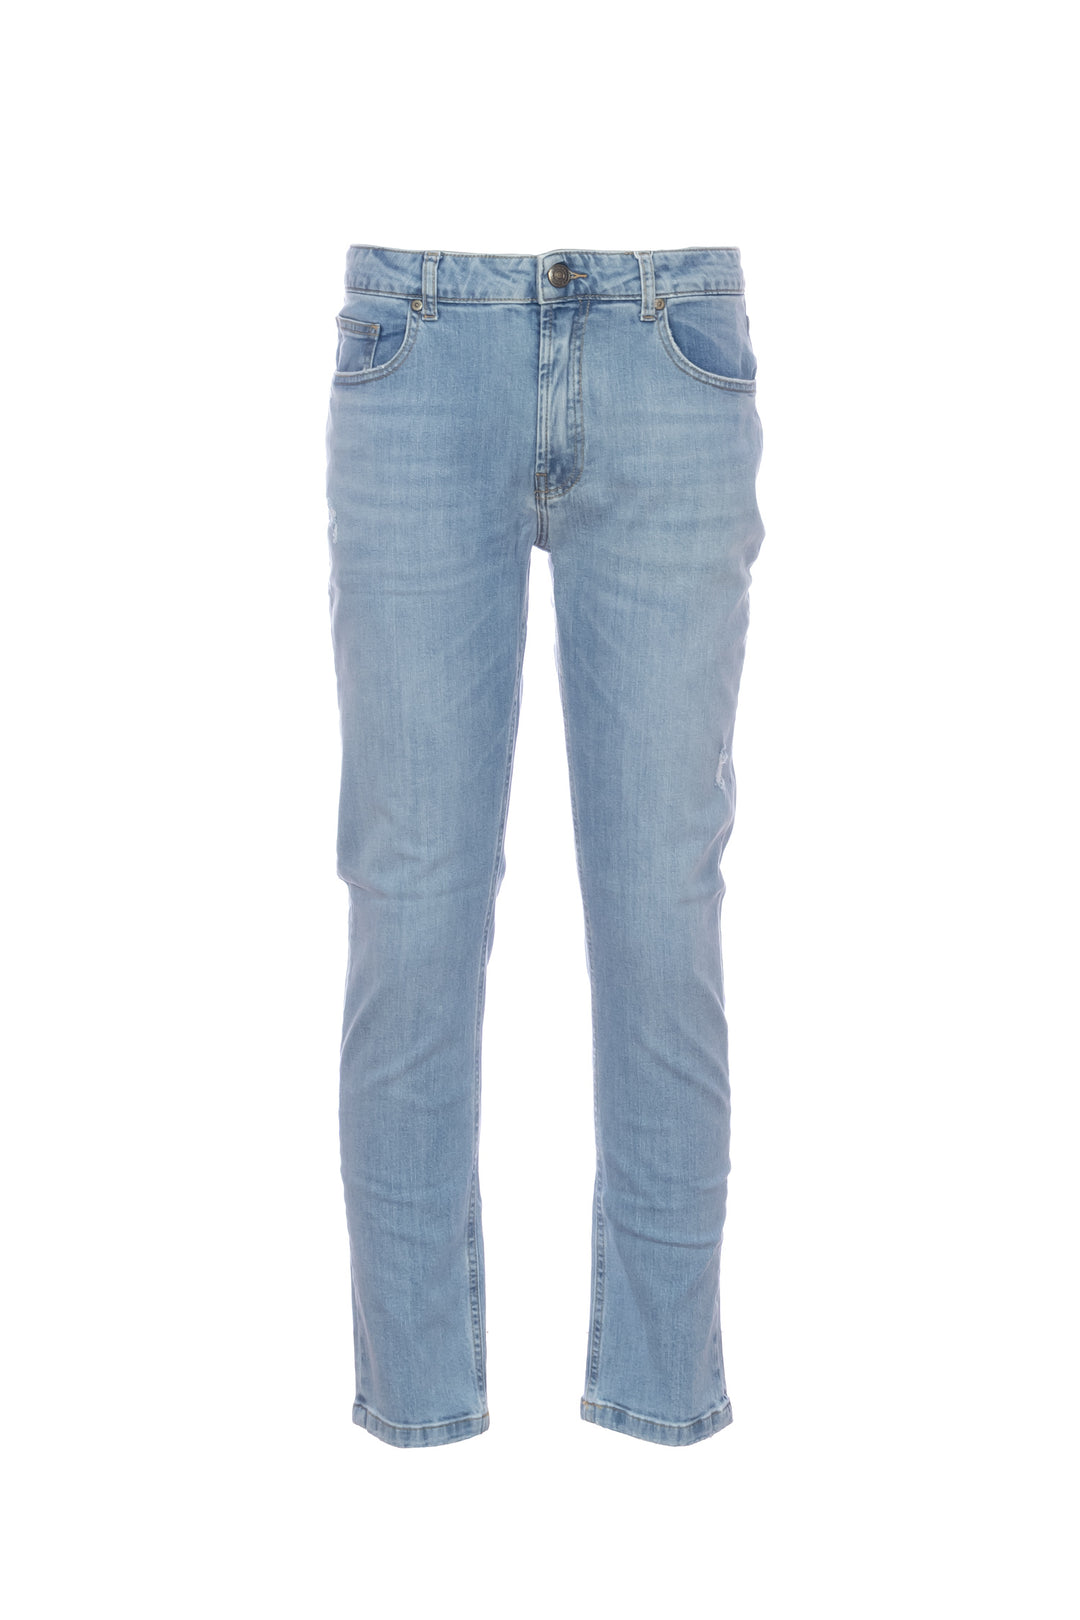 YAN SIMMON Jeans 5 tasche “BEN” in cotone stretch lavaggio chiaro - Mancinelli 1954